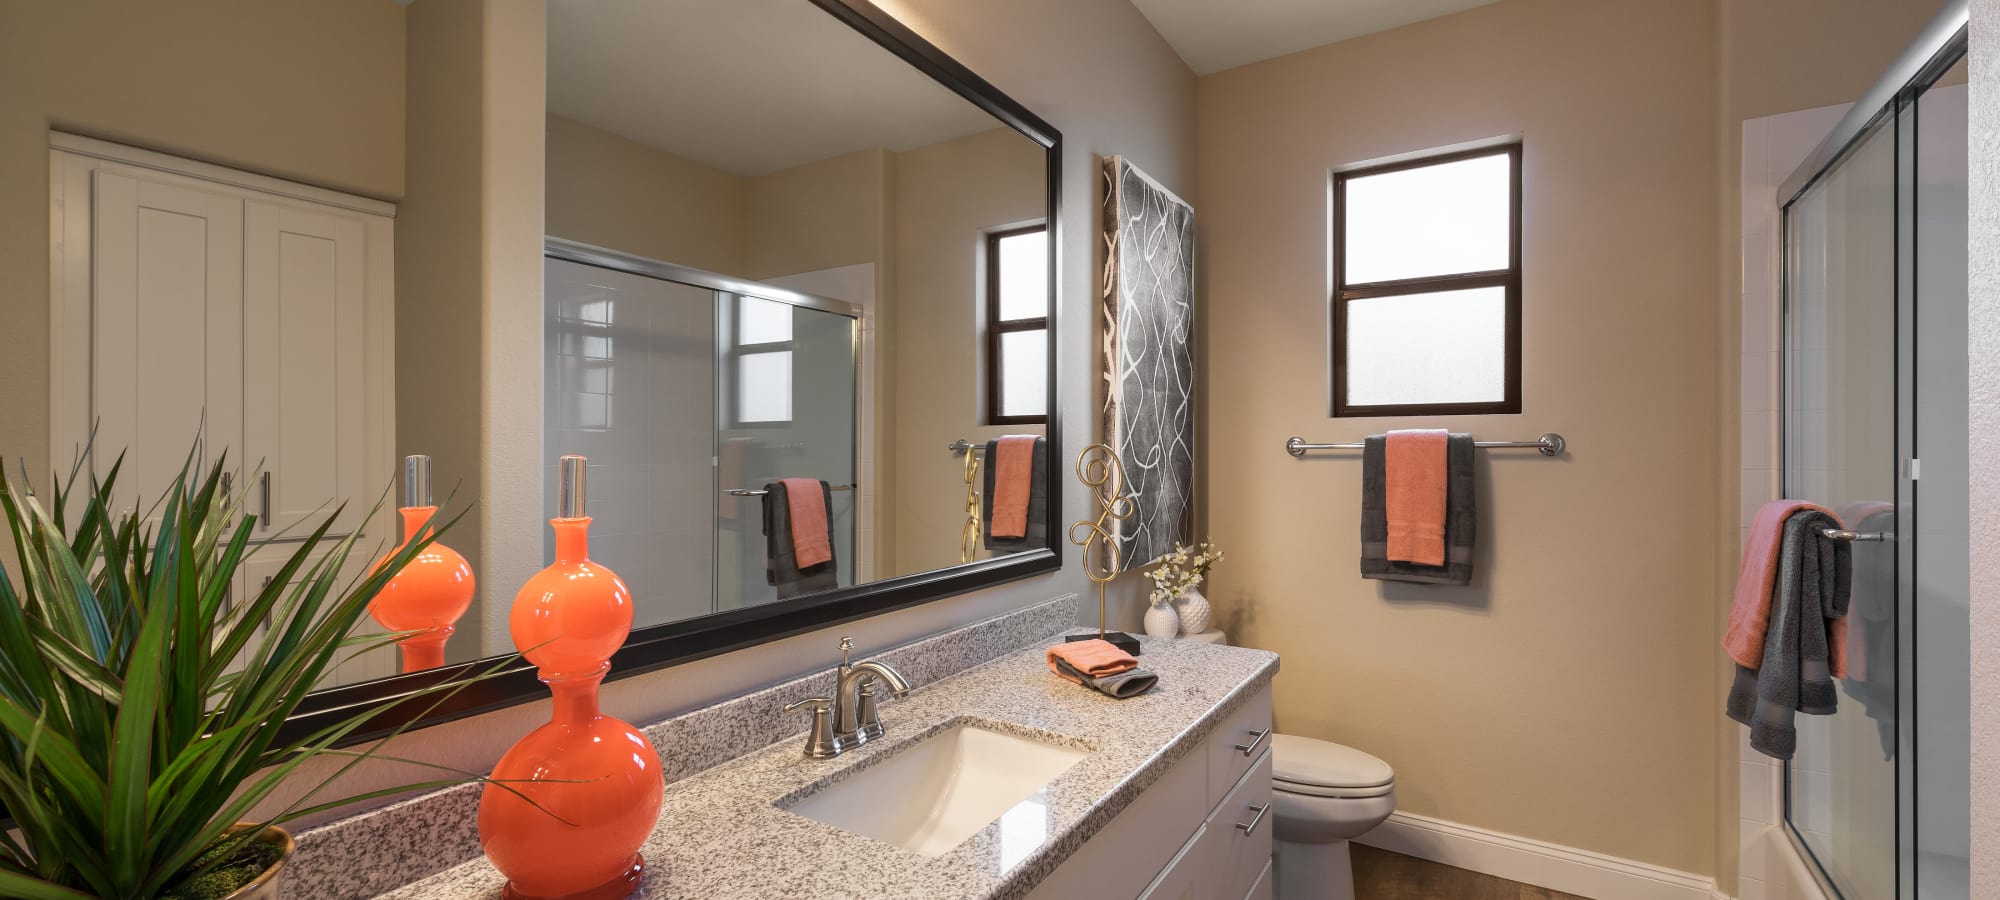 Large vanity mirror and granite countertop in bathroom of model home at San Piedra in Mesa, Arizona